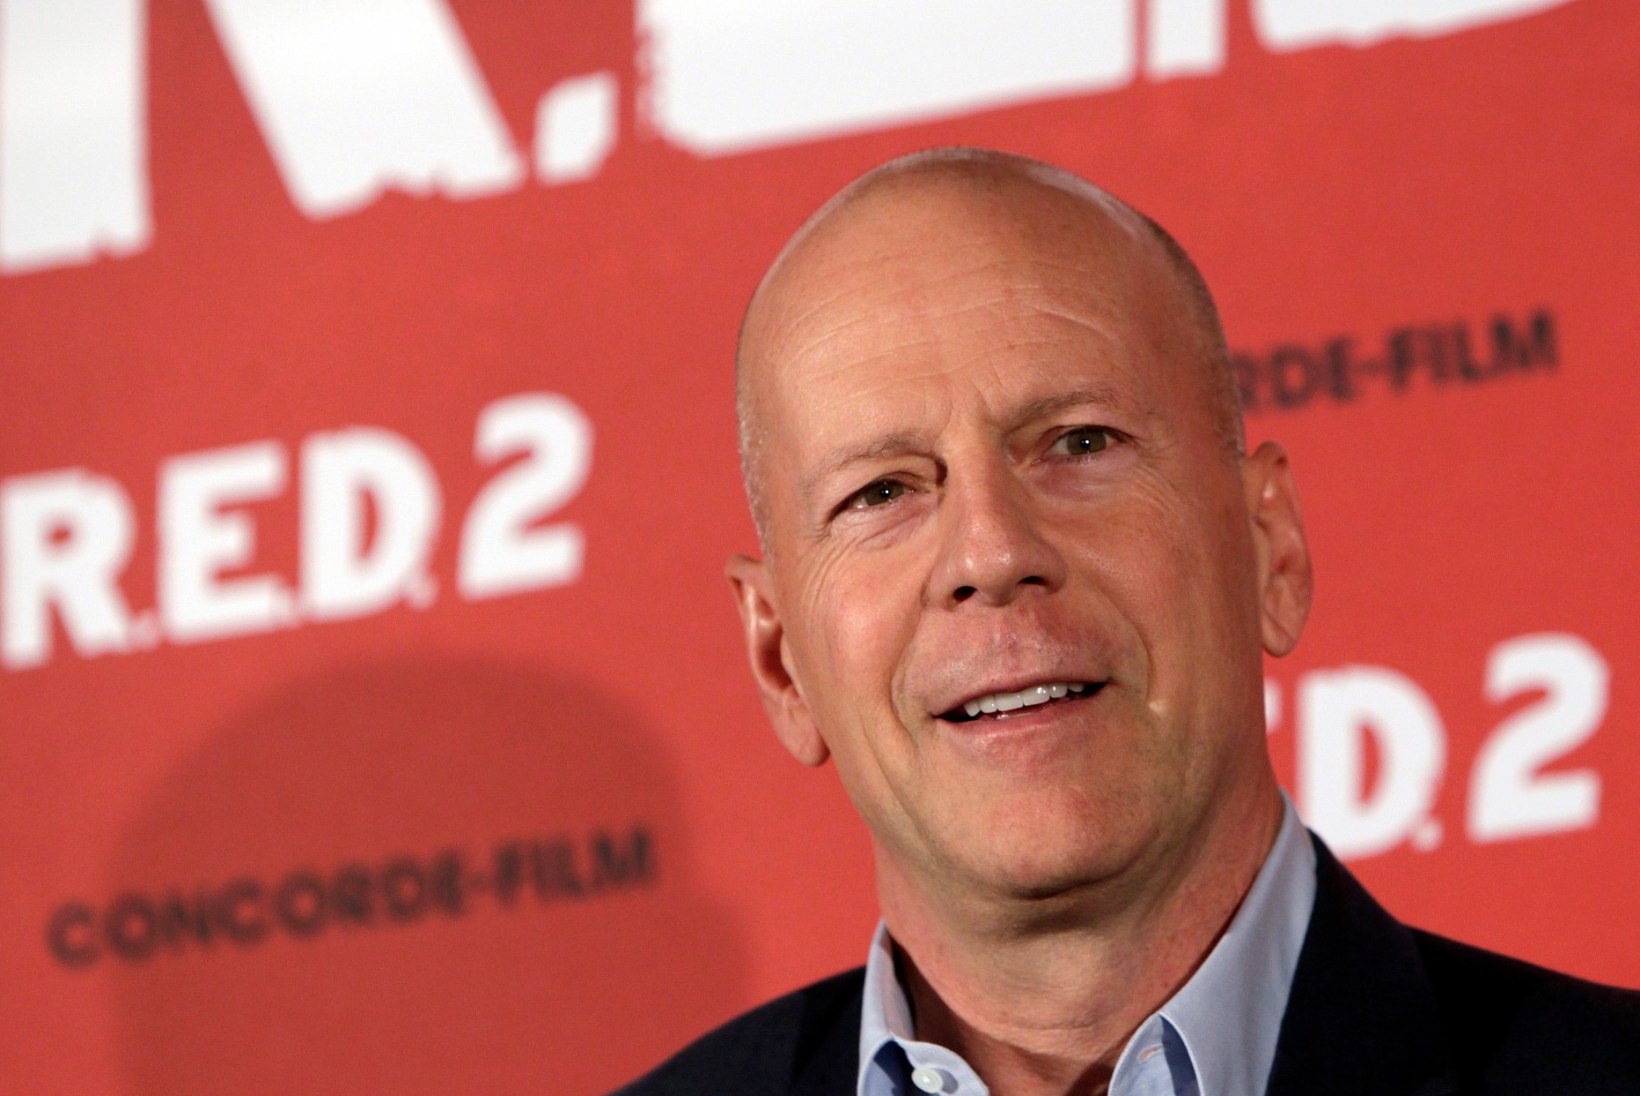 Maski kandmisest keeldunud Bruce Willis visati apteegist välja